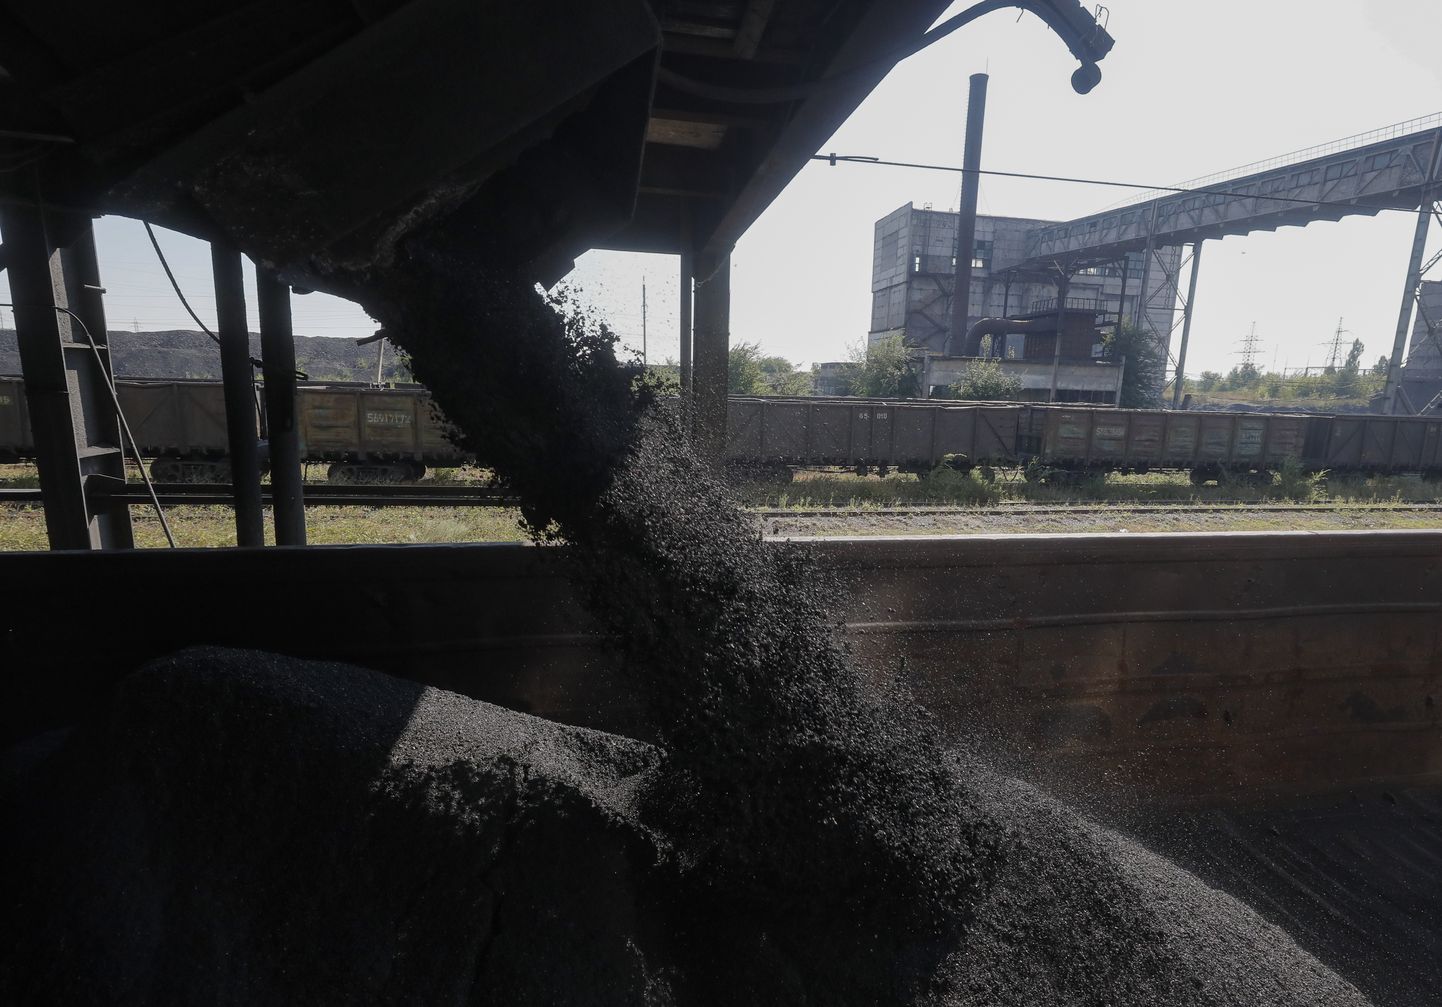 Pildil, mis on tehtud Venemaa sõjaväe korraldatud visiidi ajal Ukraina Luhanski oblastisse, on näha, kuidas kivisüsi valatakse transportimiseks vagunisse Dolžanskaja-Kapitali kaevanduses Dolžanskis.